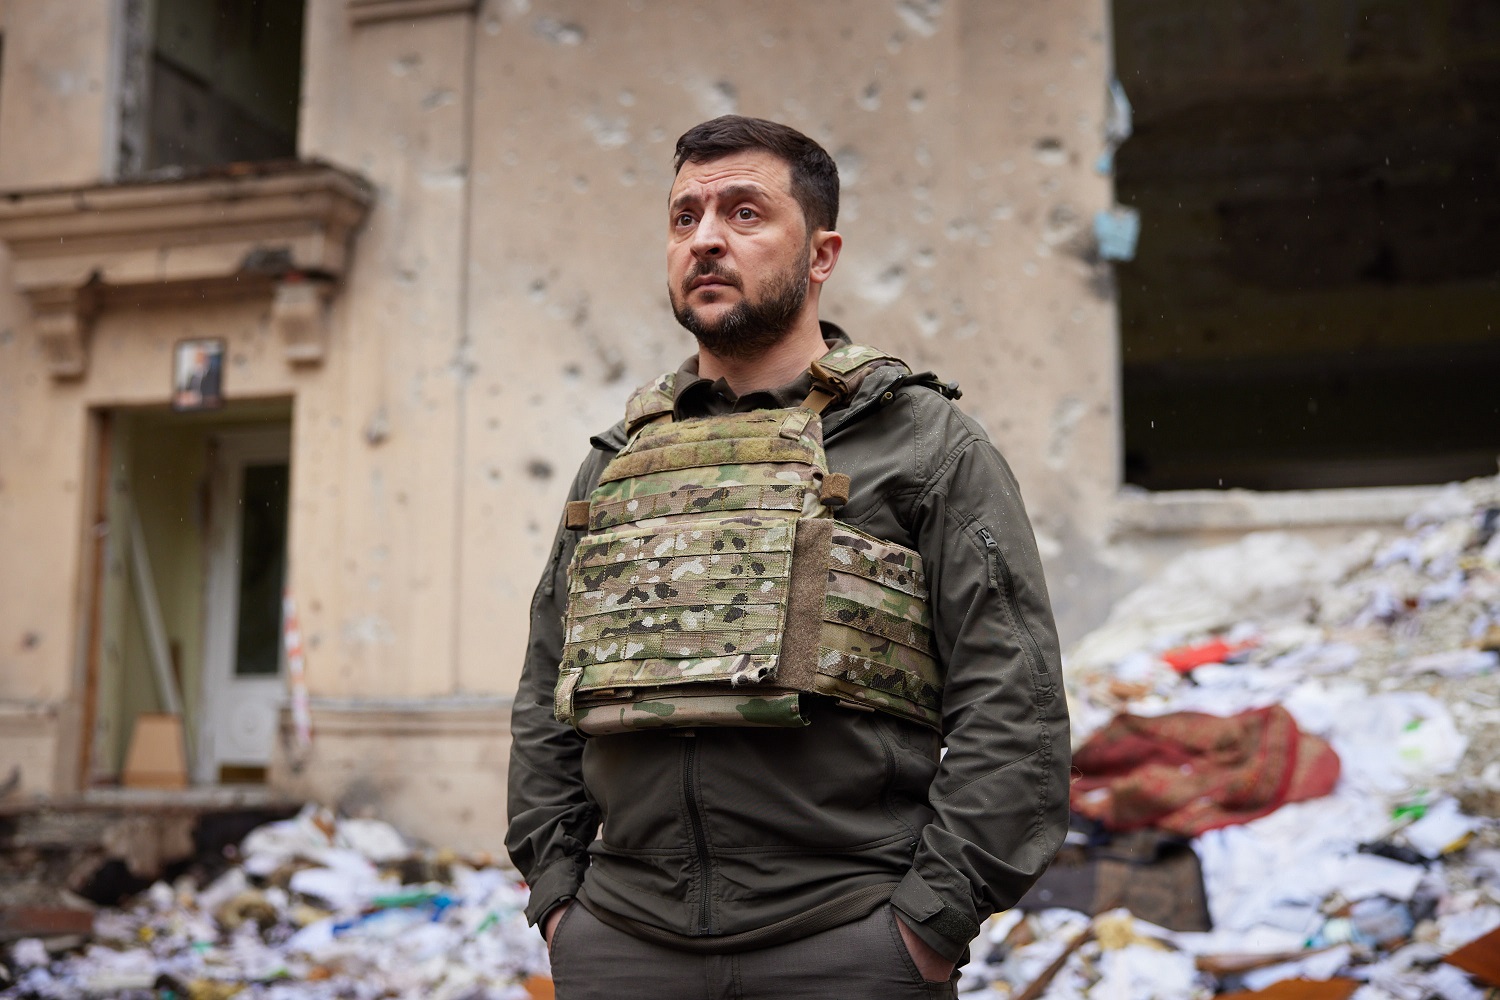 V. Zelenskis: kovų dėl Donbaso kontrolės rezultatai lems tolesnę karo eigą